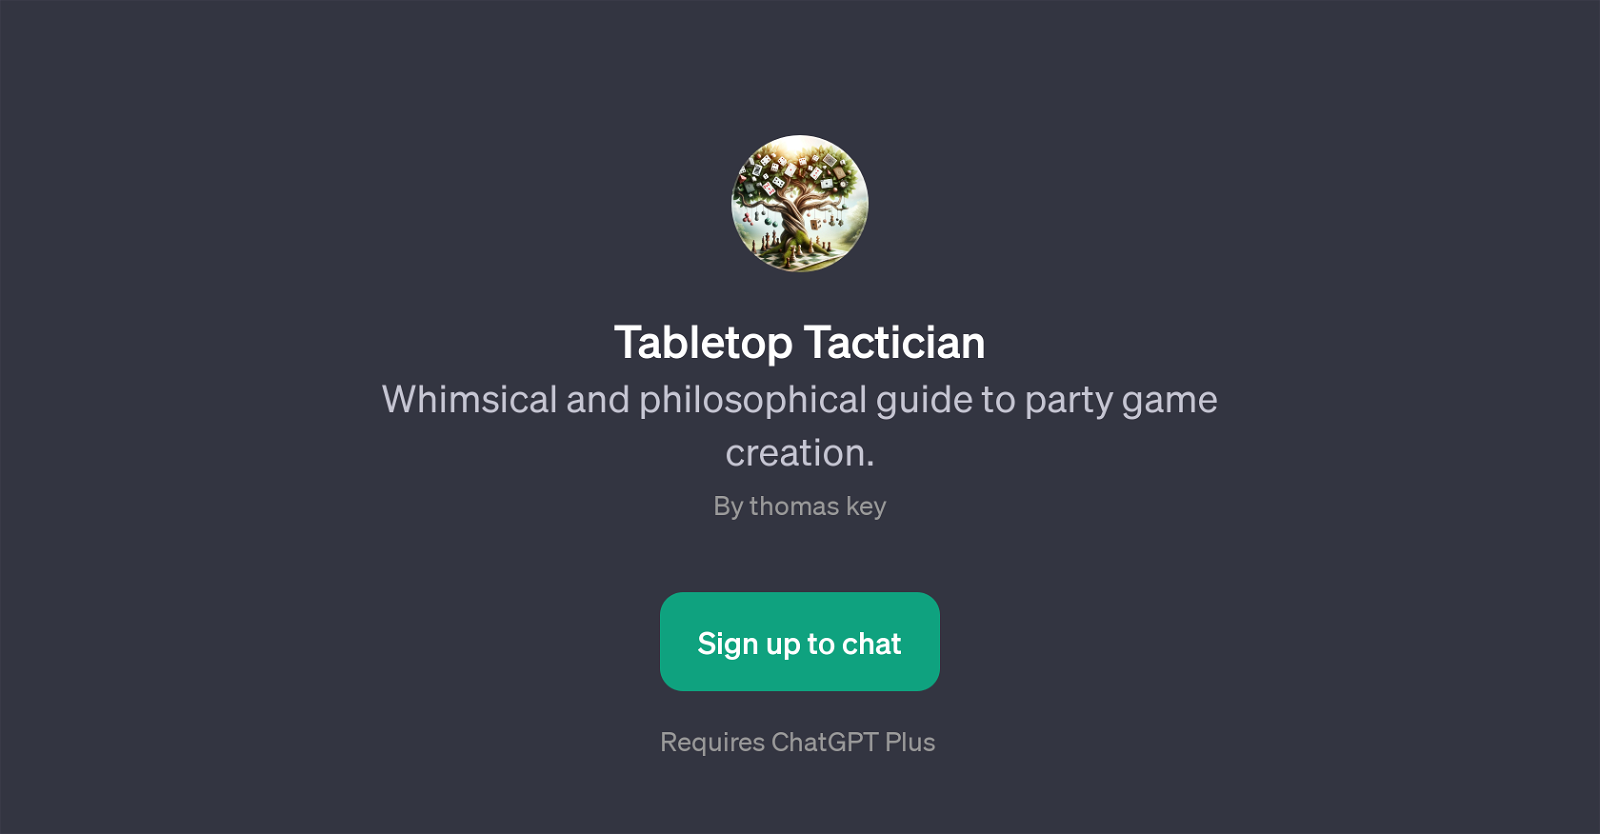 Tabletop Tactician website